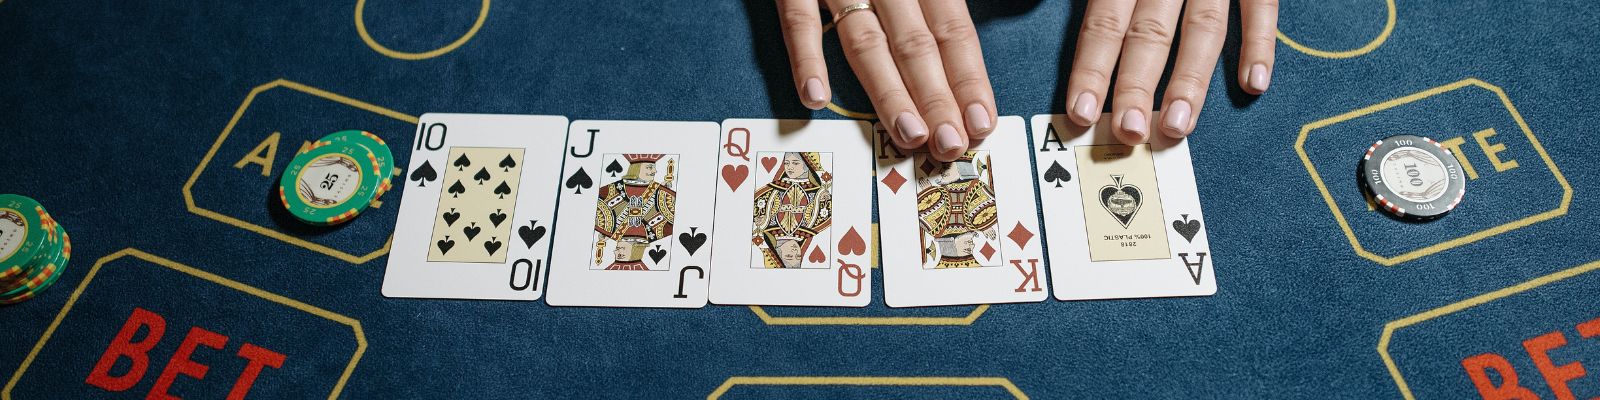 Estratégias de pôquer de apostas altas para obter grandes lucros em sites de cassino com uma conexão VPN segura